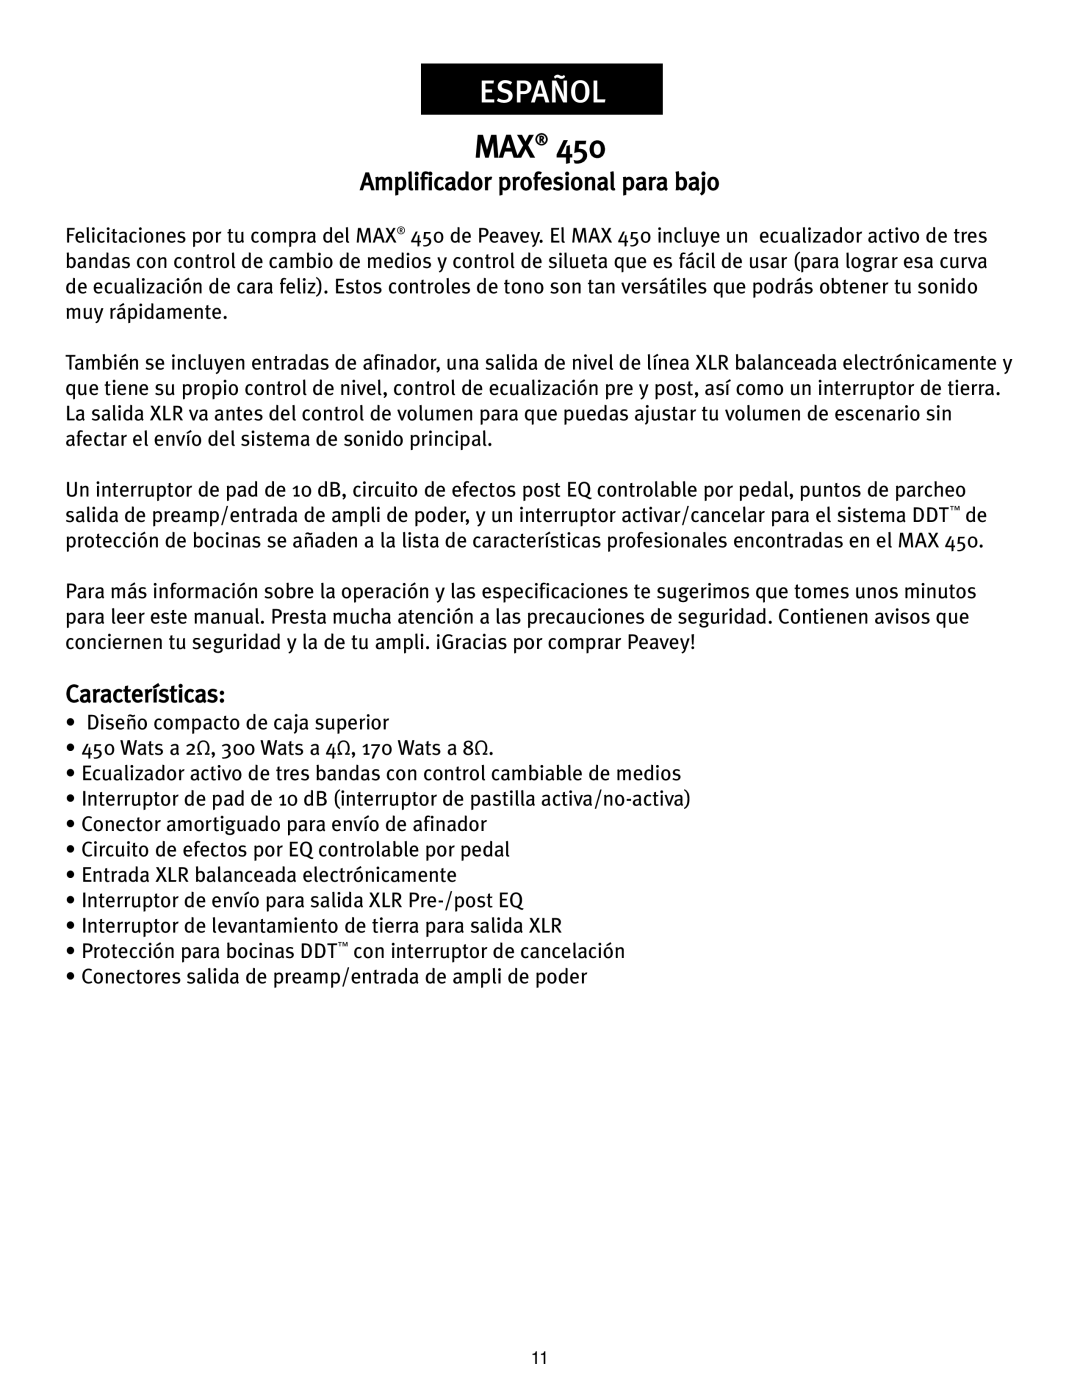 Peavey 450 operation manual Español, Amplificador profesional para bajo, Características 